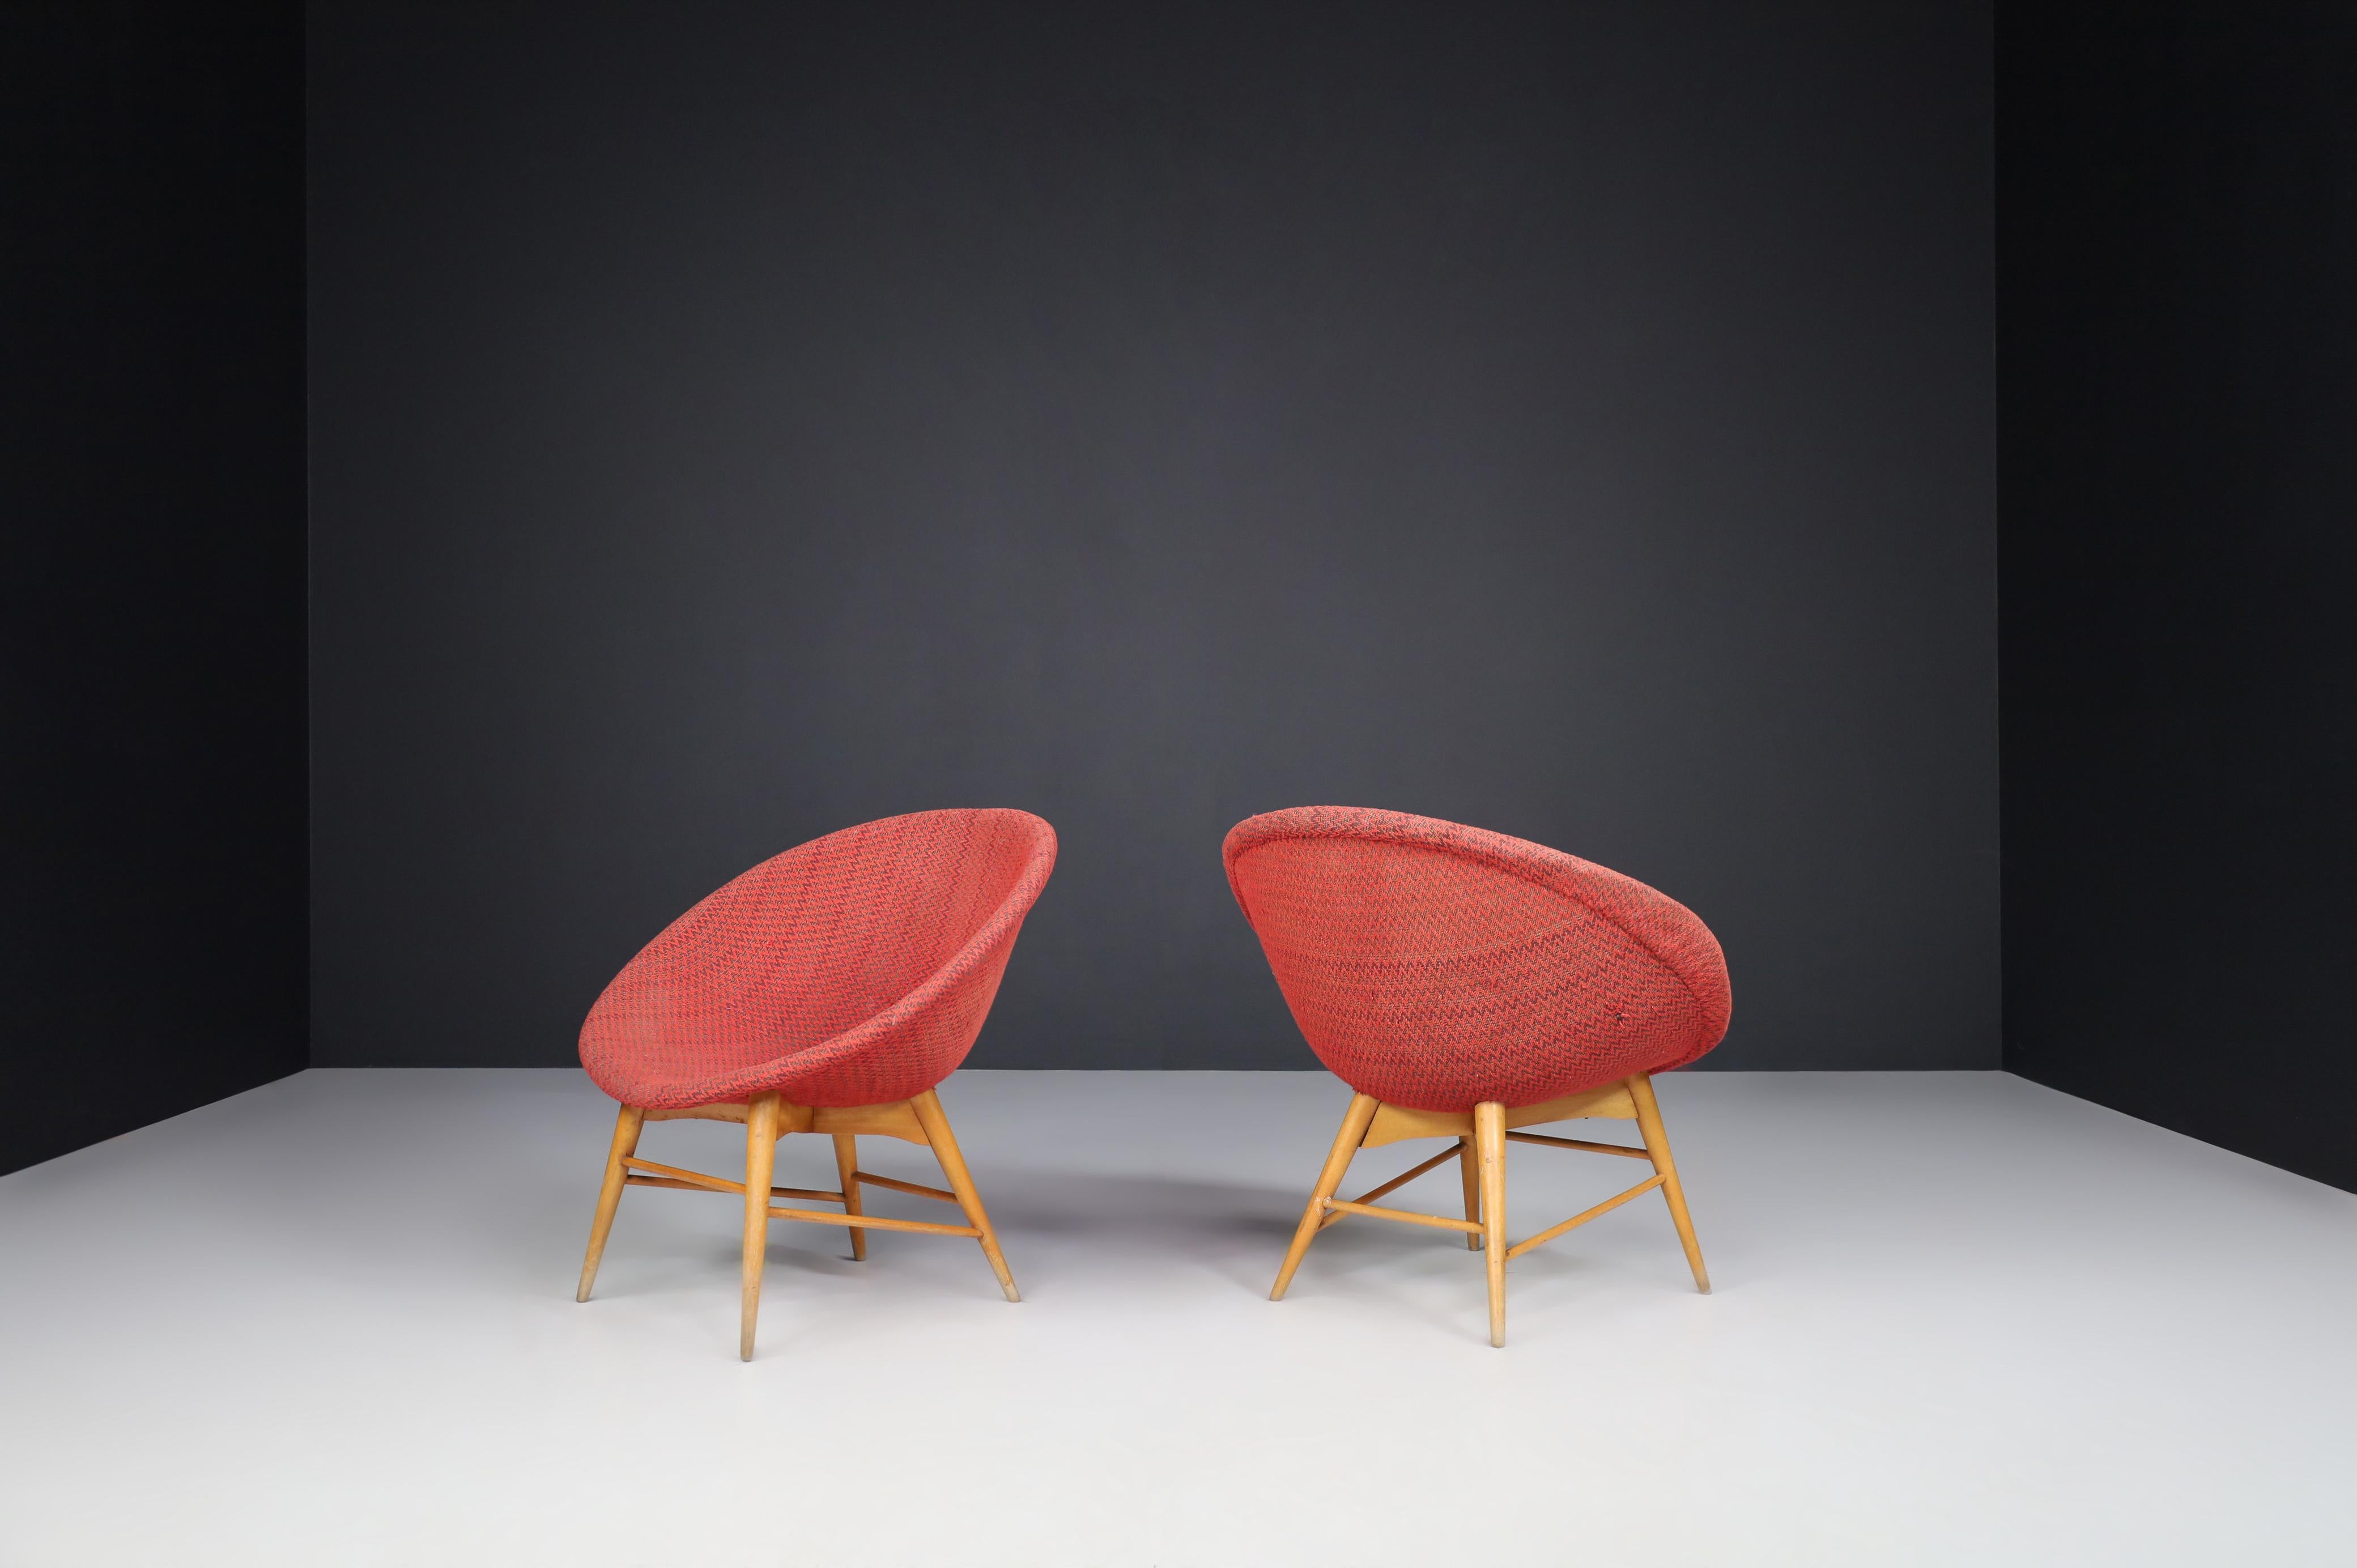 Fauteuils Miroslav Navratil en tissu original 1960.

Joli ensemble de deux chaises panier de Miroslav Navratil, fabriquées en République tchèque par Cesky Nabytek vers 1960. Ces chaises ont une base en contreplaqué de hêtre et une coque en fibre de